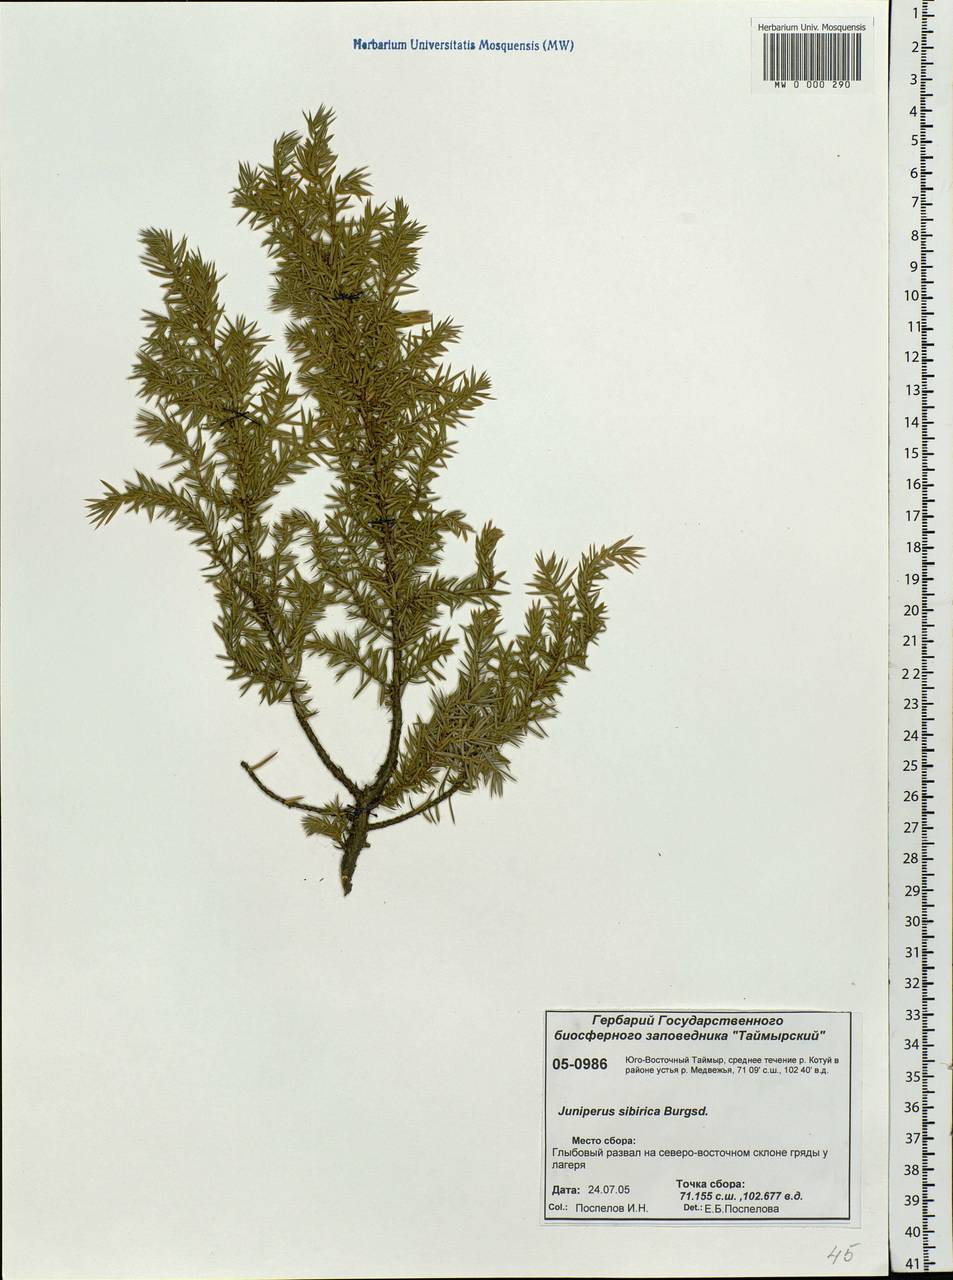 Juniperus communis var. saxatilis Pall., Siberia, Central Siberia (S3) (Russia)